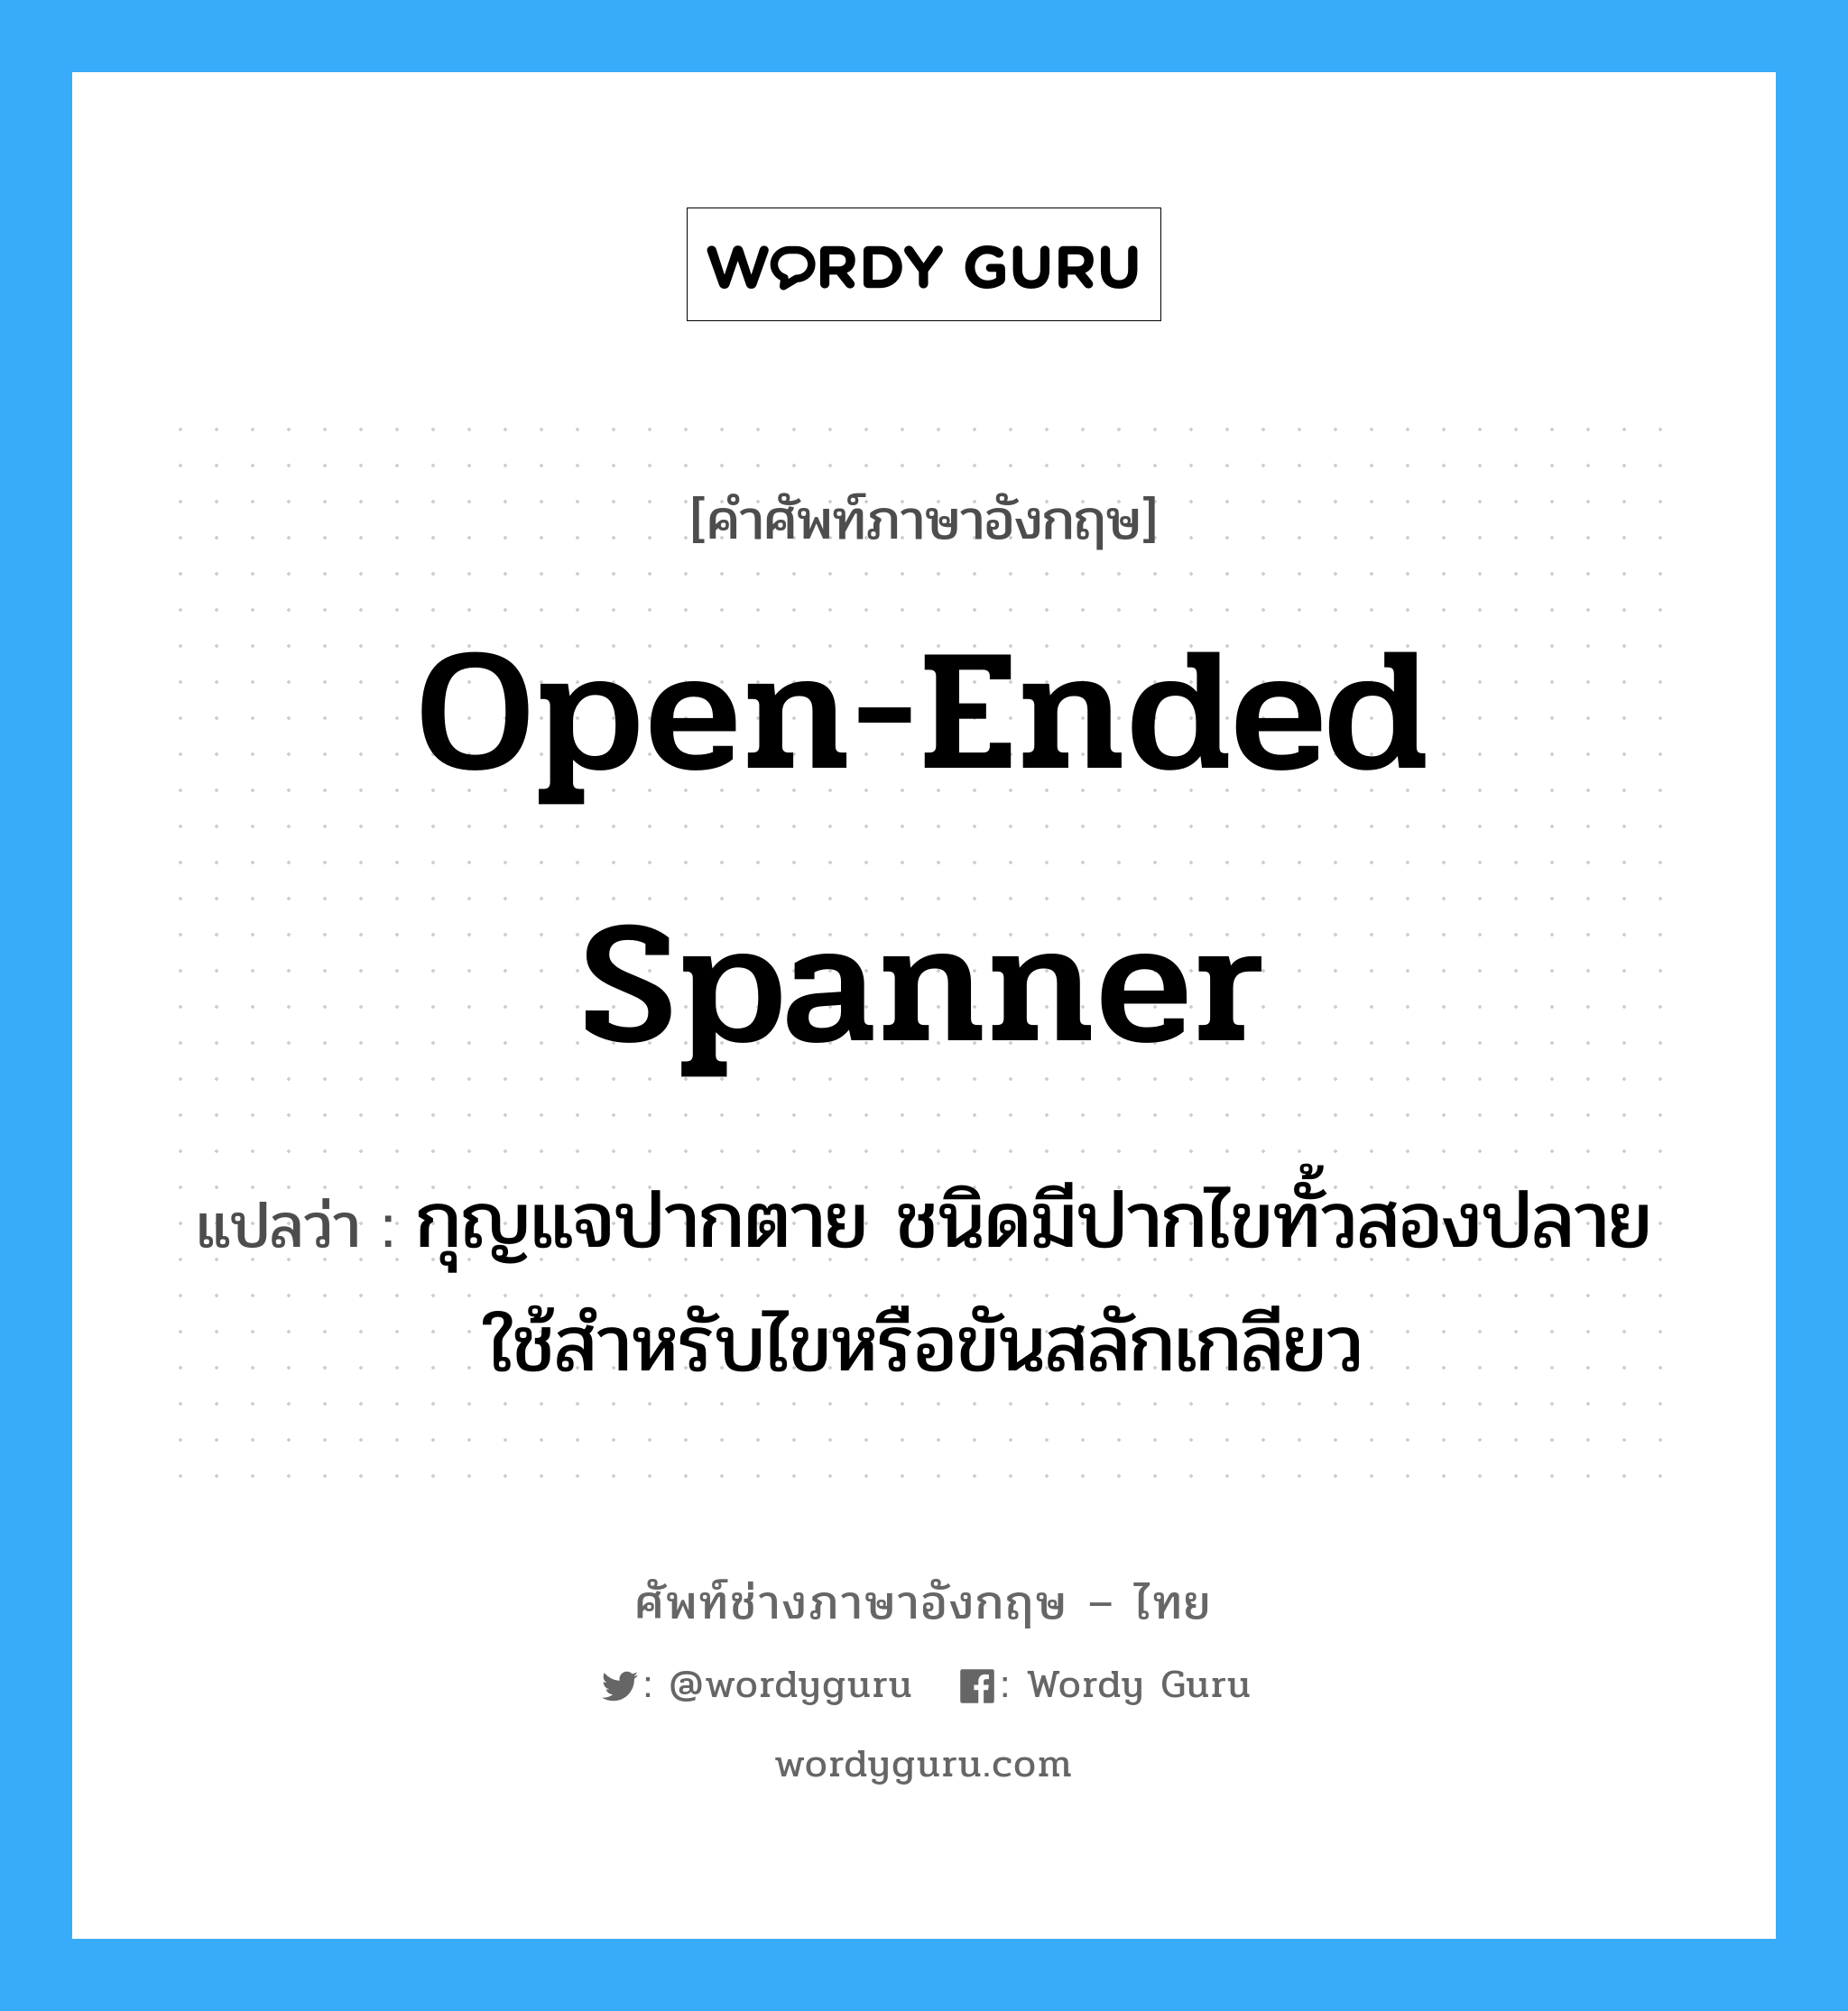 open-ended spanner แปลว่า?, คำศัพท์ช่างภาษาอังกฤษ - ไทย open-ended spanner คำศัพท์ภาษาอังกฤษ open-ended spanner แปลว่า กุญแจปากตาย ชนิดมีปากไขทั้วสองปลาย ใช้สำหรับไขหรือขันสลักเกลียว